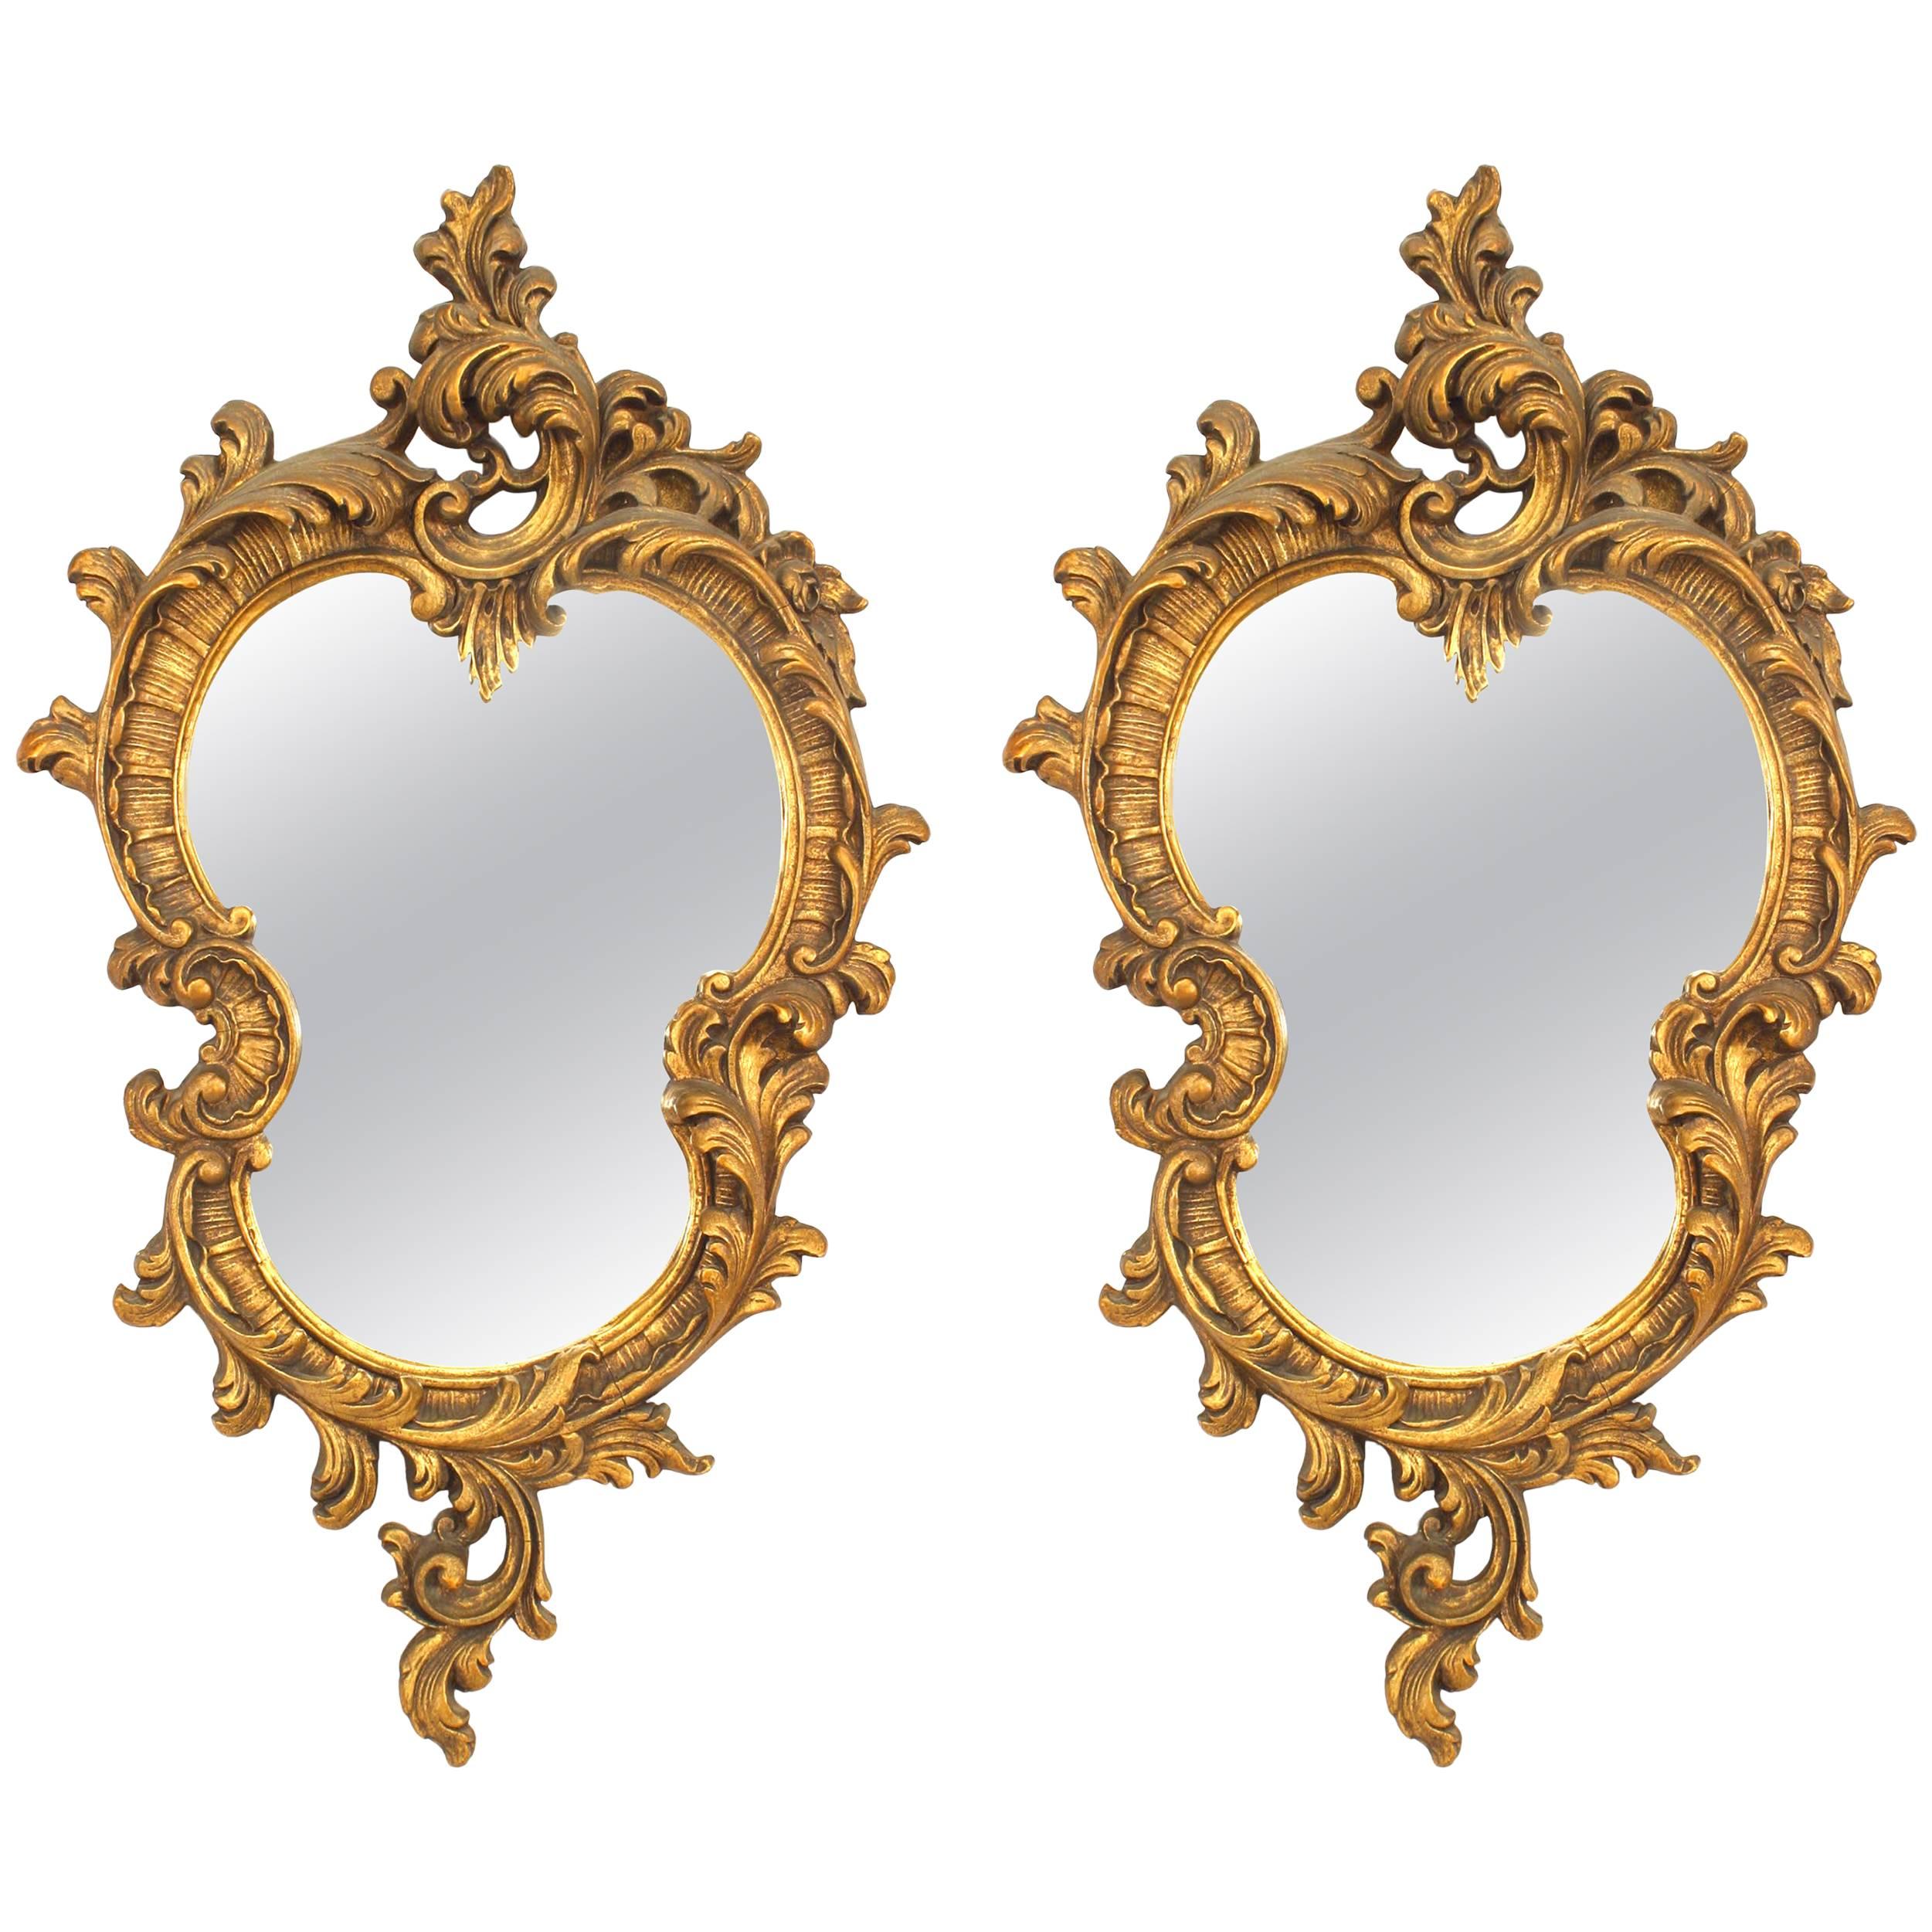 Miroirs muraux français de style Louis XV du XIXe/XXe siècle peints en or